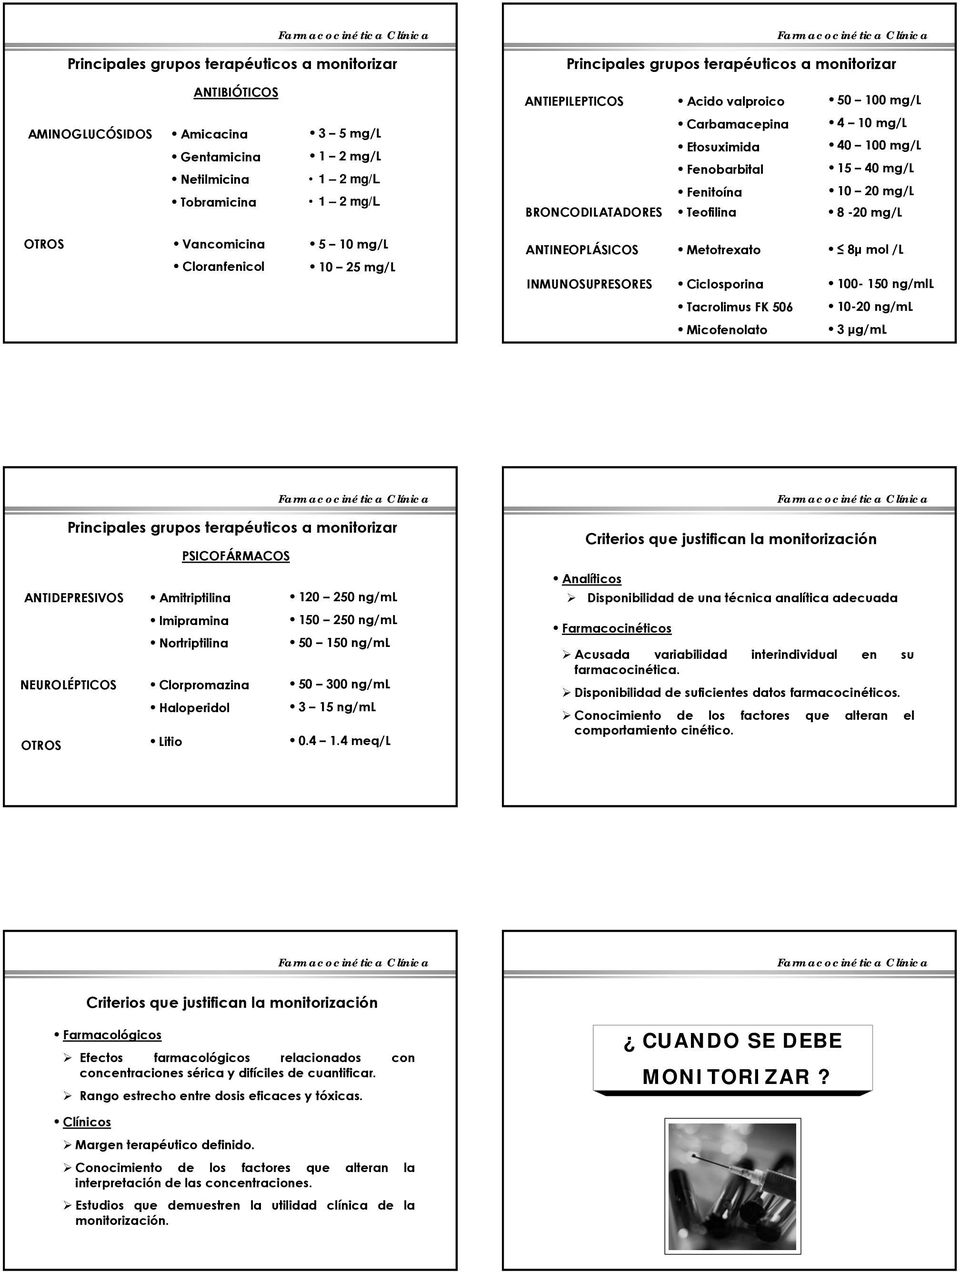 Cloranfenicol 5 10 mg/l 10 25 mg/l ANTINEOPLÁSICOS INMUNOSUPRESORES Metotrexato Ciclosporina 8μ mol /L 100-150 ng/mll Tacrolimus FK 506 10-20 ng/ml Micofenolato 3 μg/ml Principales grupos